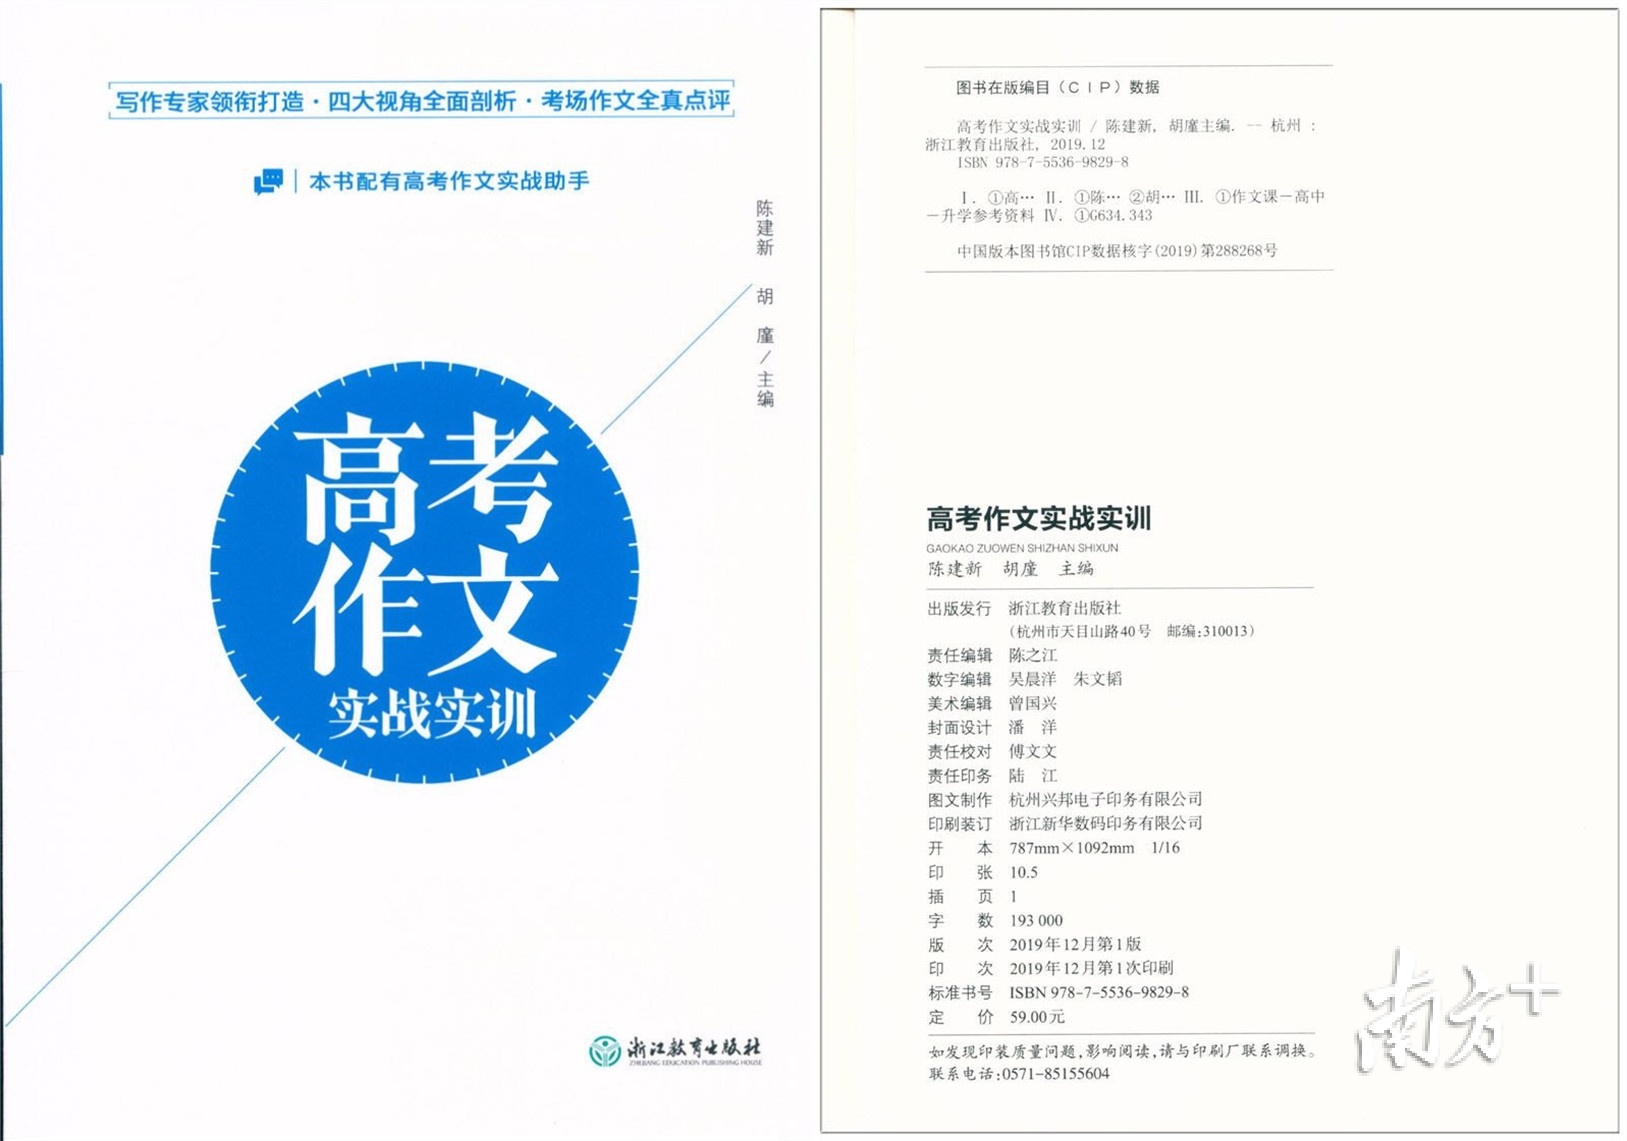 陈建新主编出售《高考作文实战实训》。